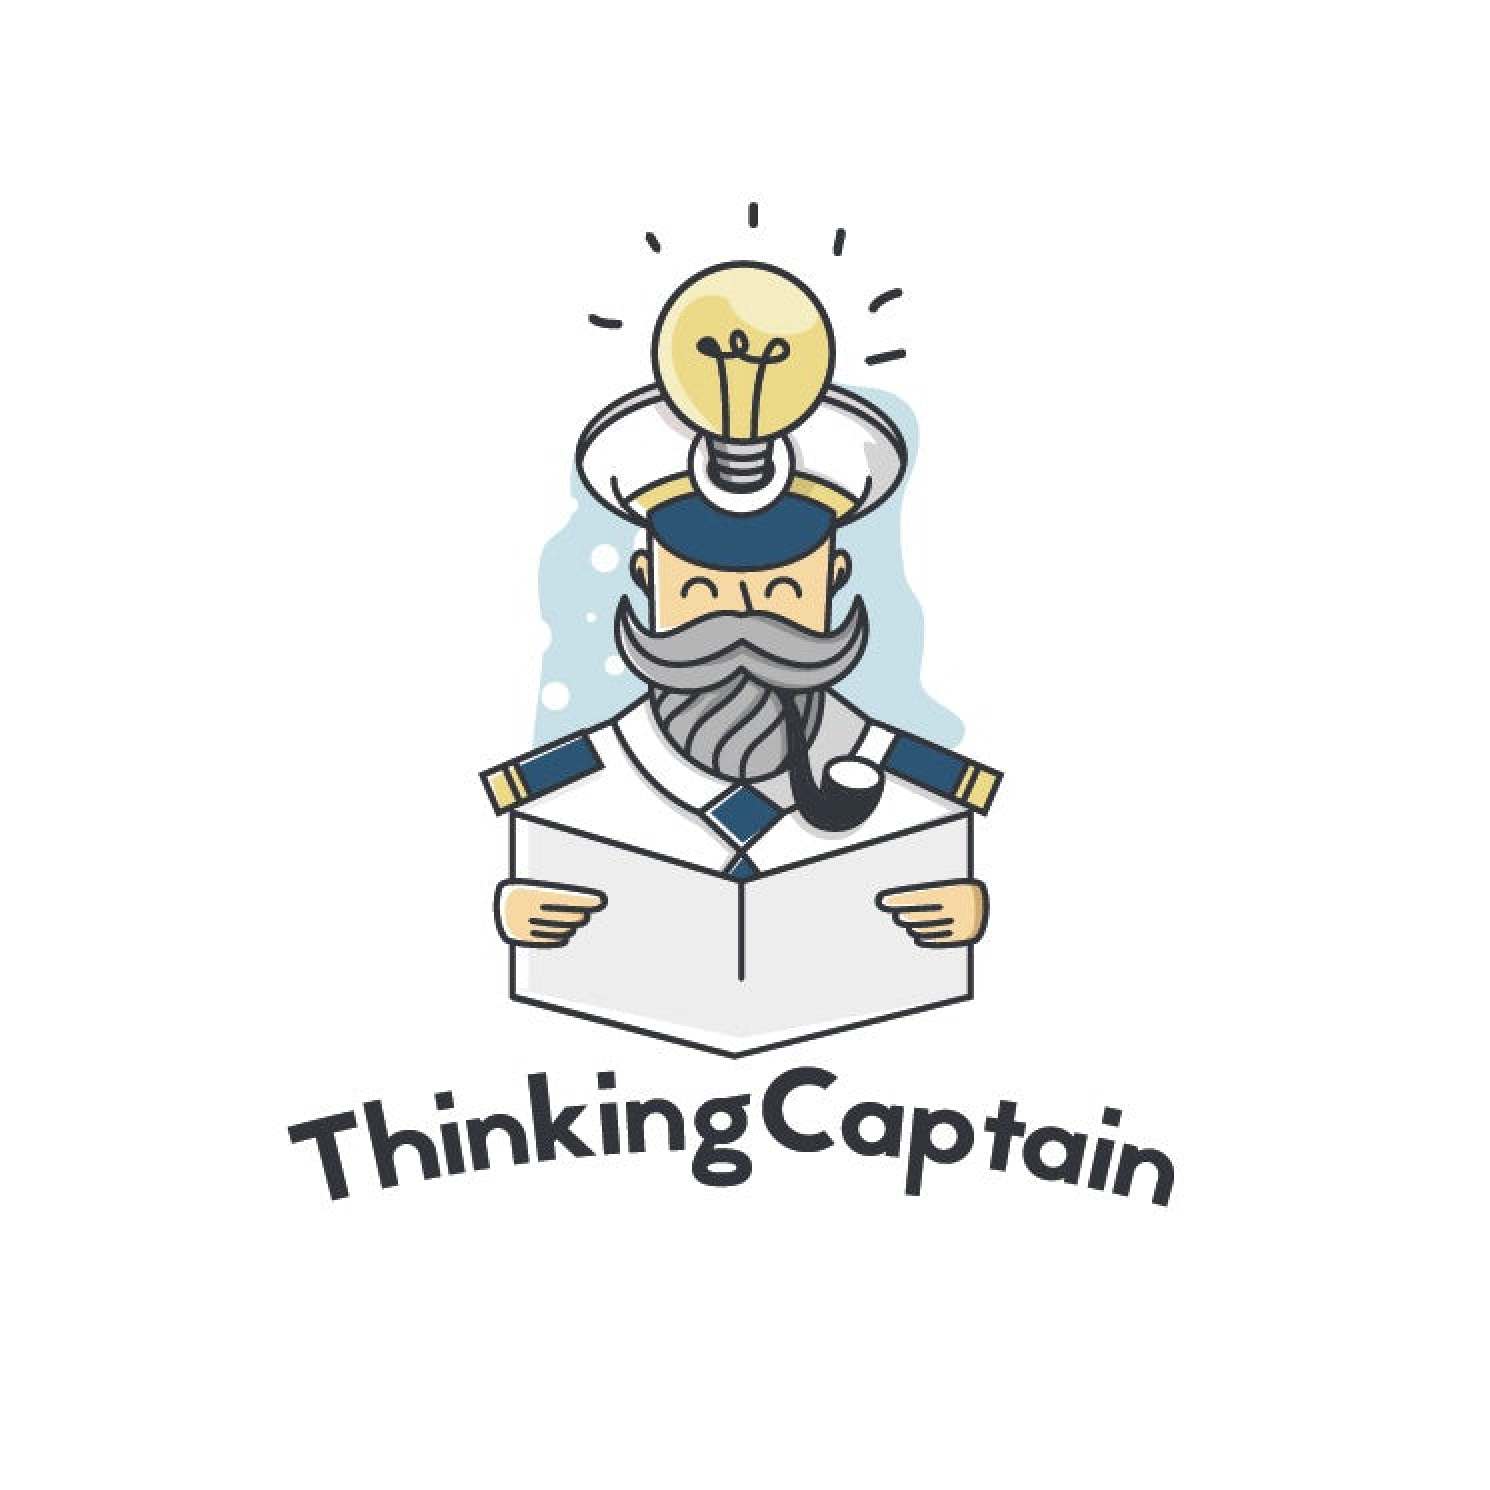 Thinking Captain logo